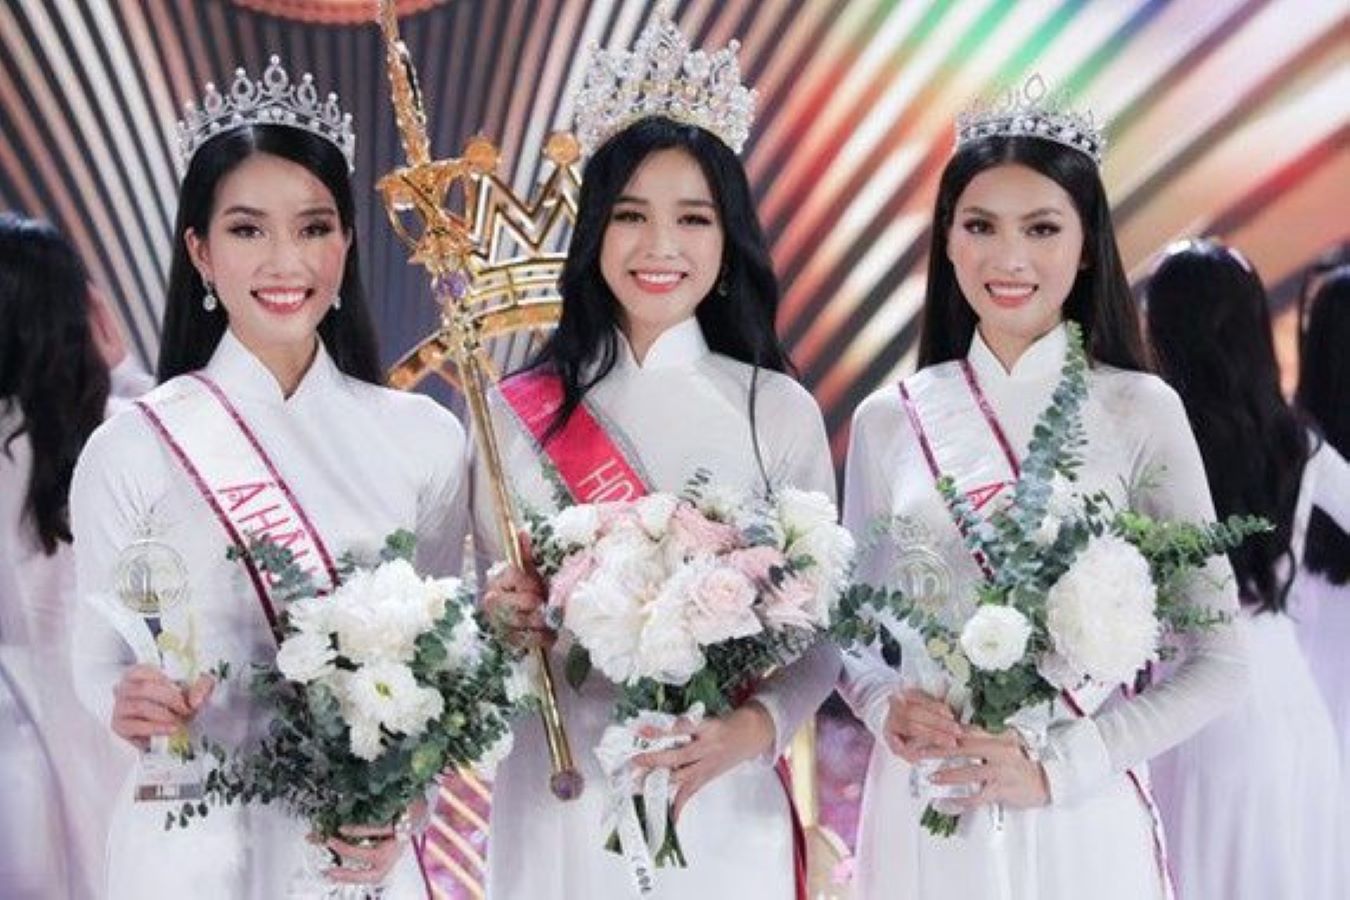 مسابقات ملكات الجمال.. تجارة مربحة في فيتنام